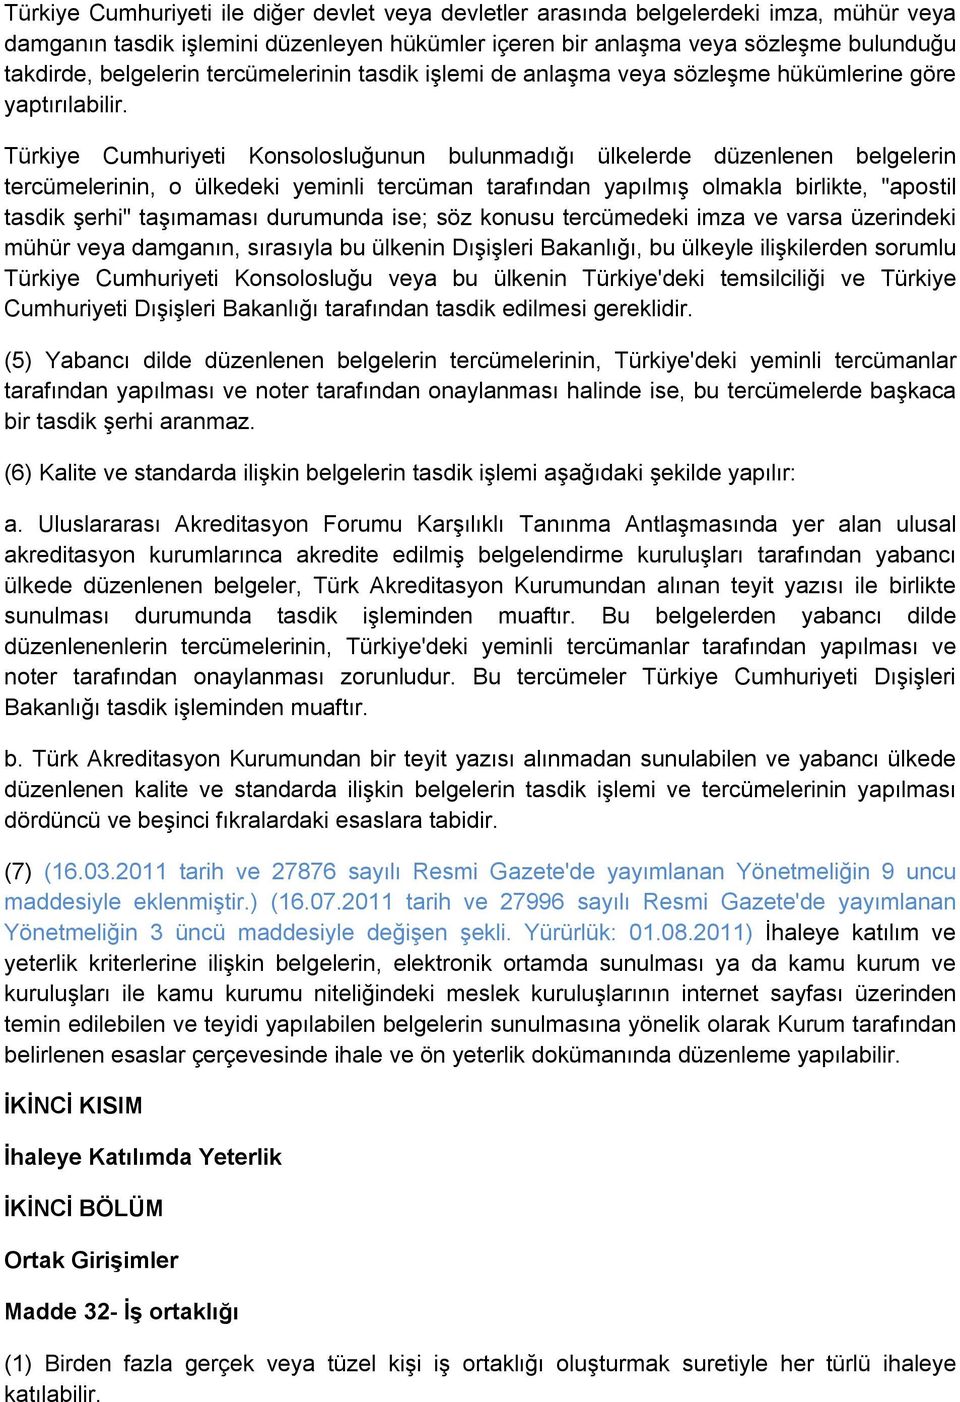 Türkiye Cumhuriyeti Konsolosluğunun bulunmadığı ülkelerde düzenlenen belgelerin tercümelerinin, o ülkedeki yeminli tercüman tarafından yapılmış olmakla birlikte, "apostil tasdik şerhi" taşımaması